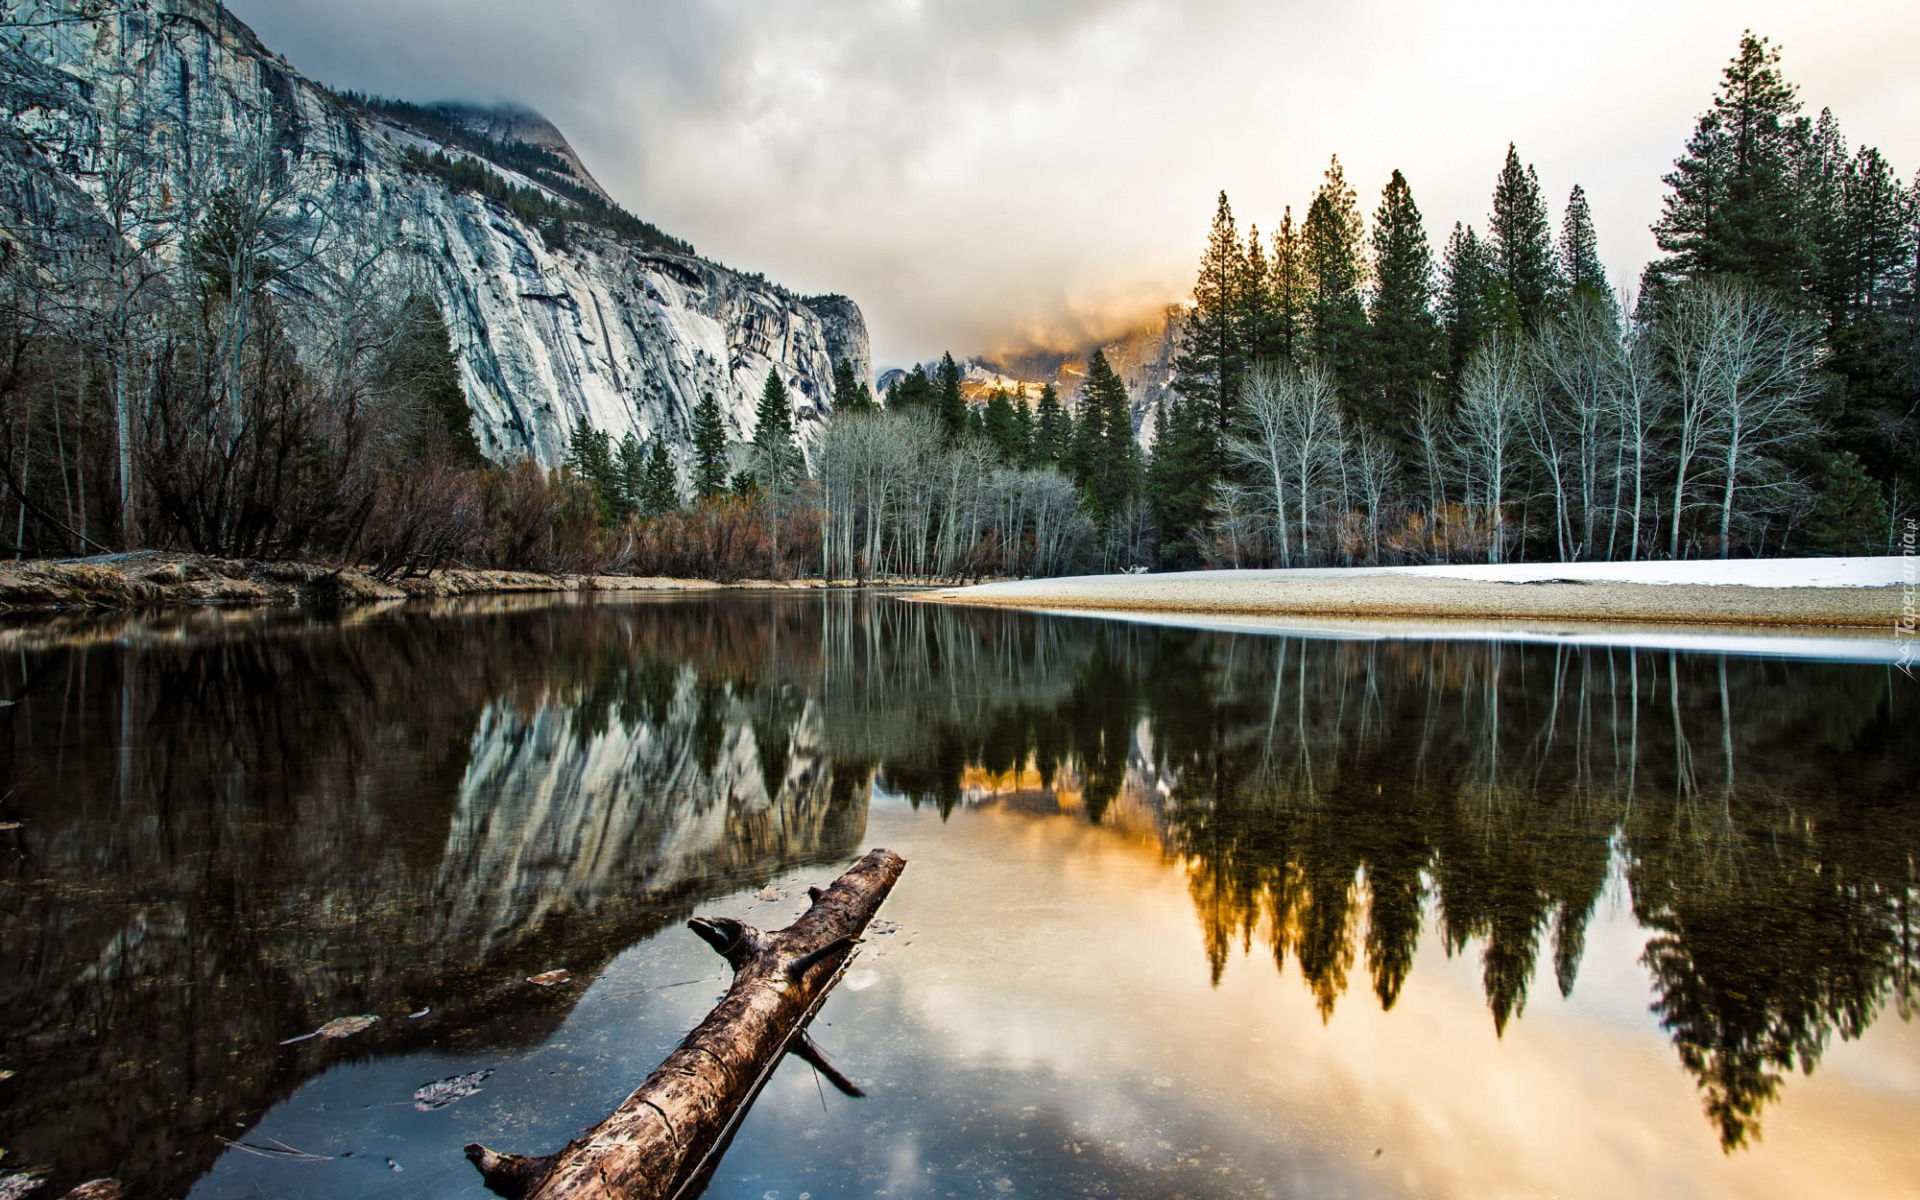 Góry, Rzeka, Merced River, Drzewa, Las, Odbicie, Park Narodowy Yosemite, Kalifornia, Stany Zjednoczone